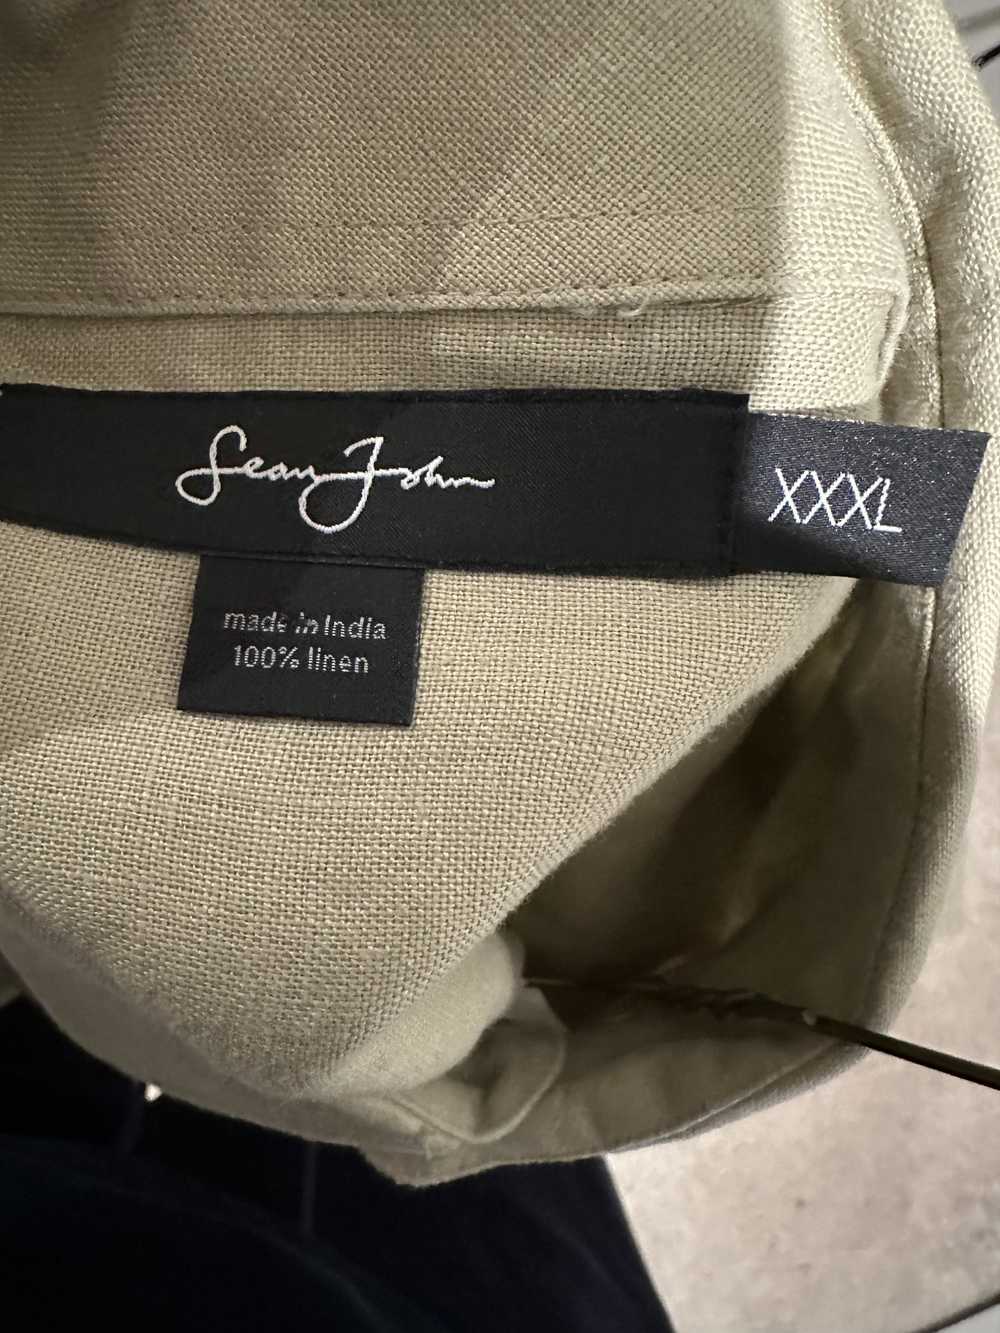 Sean John Sean John Men’s Linen Shirt size 3Xl - image 8